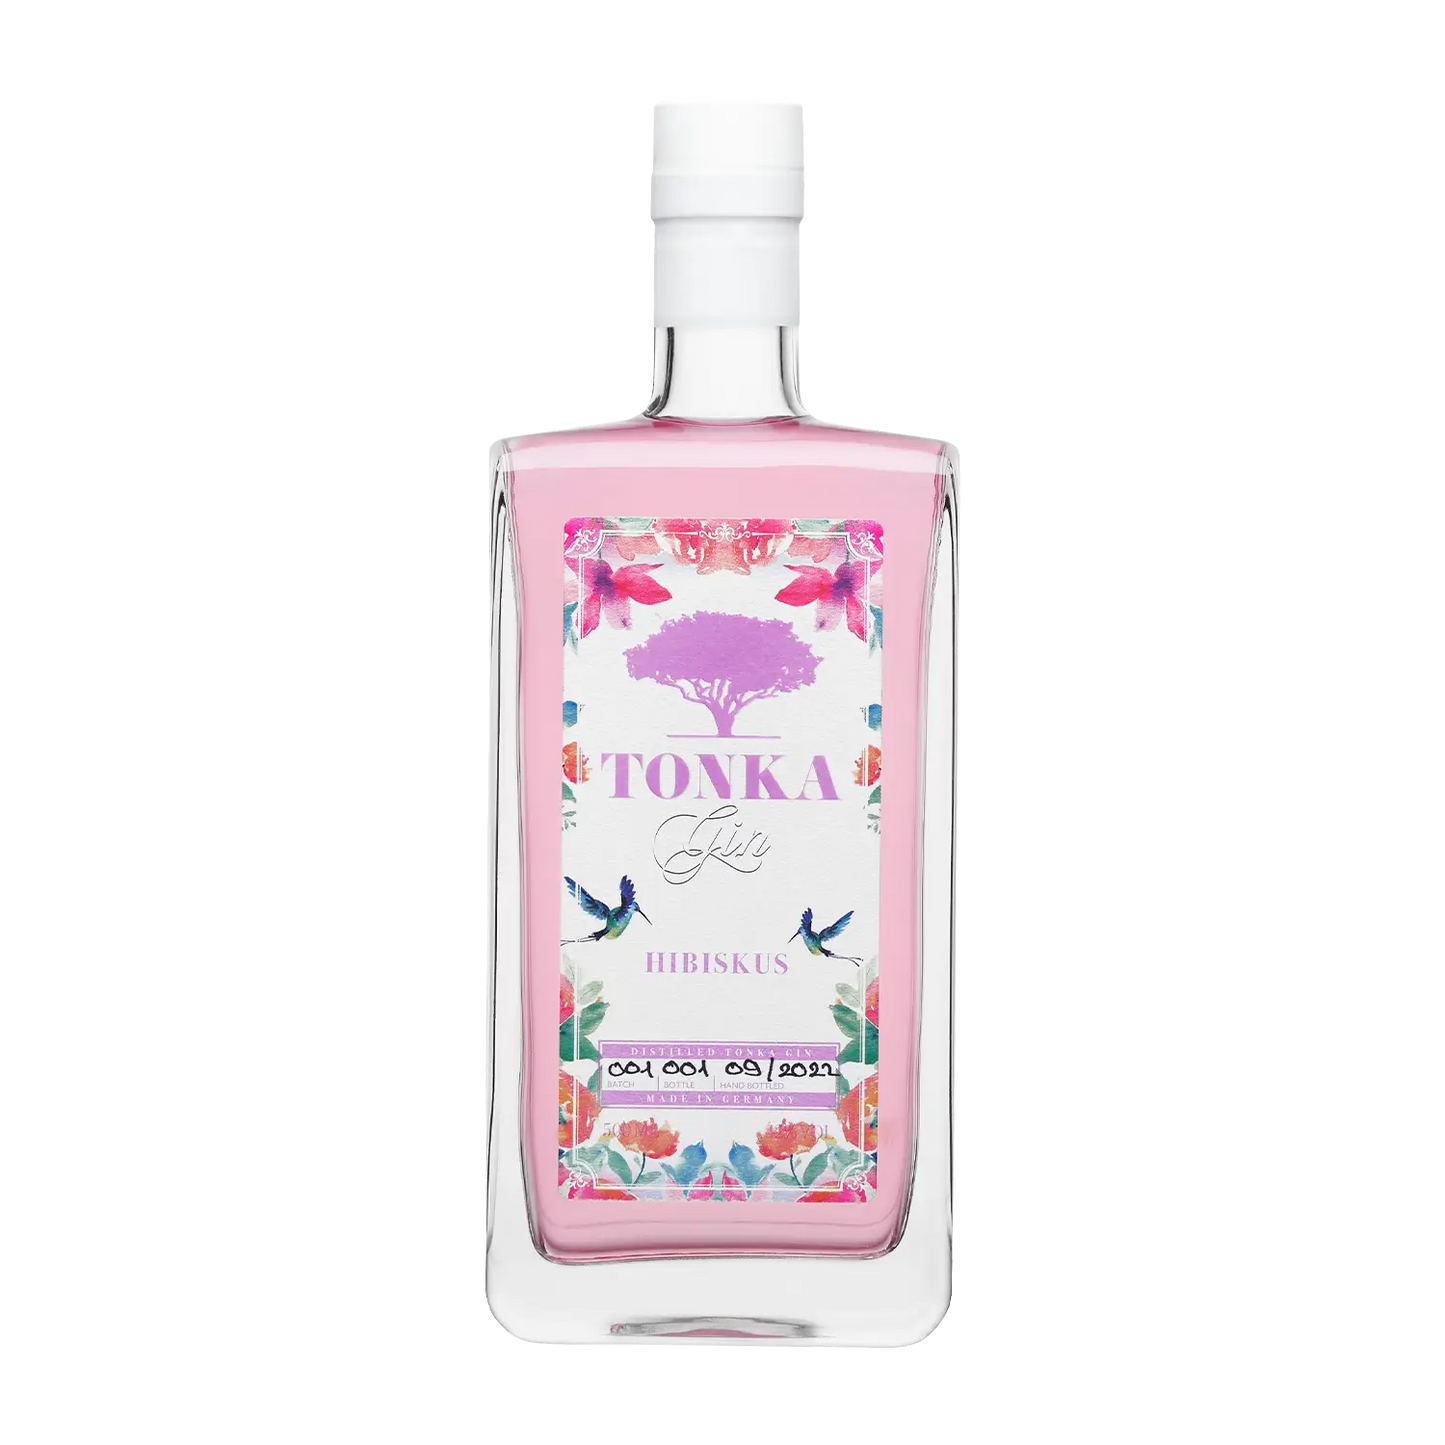 Tonka Spirituosenliebhaber – - hibiscus flowerGin hibiscus Gin Tonka Hibiscus meets bean